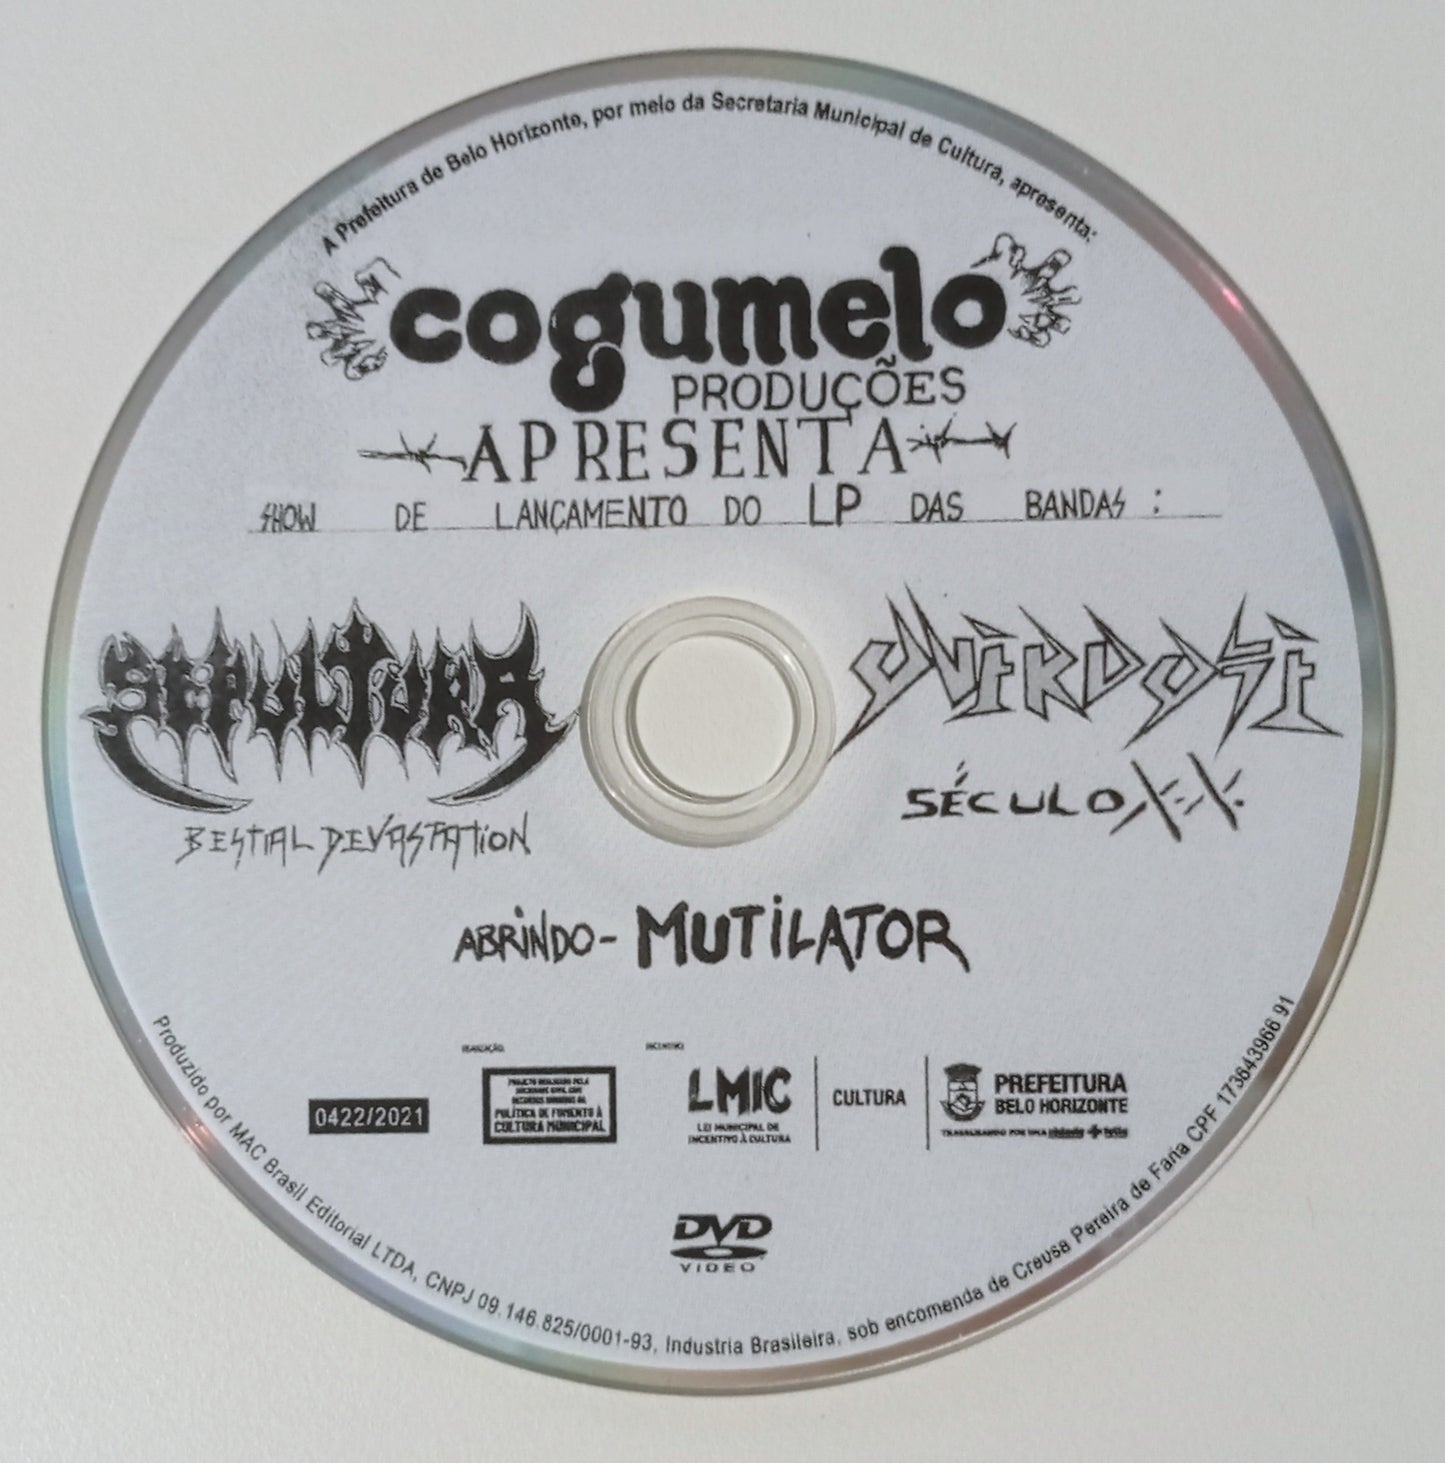 Sepultura / Overdose / Mutilator - Show De Lançamento Do LP "Bestial Devastation / Século XX  (DVD Nacional - Usado)